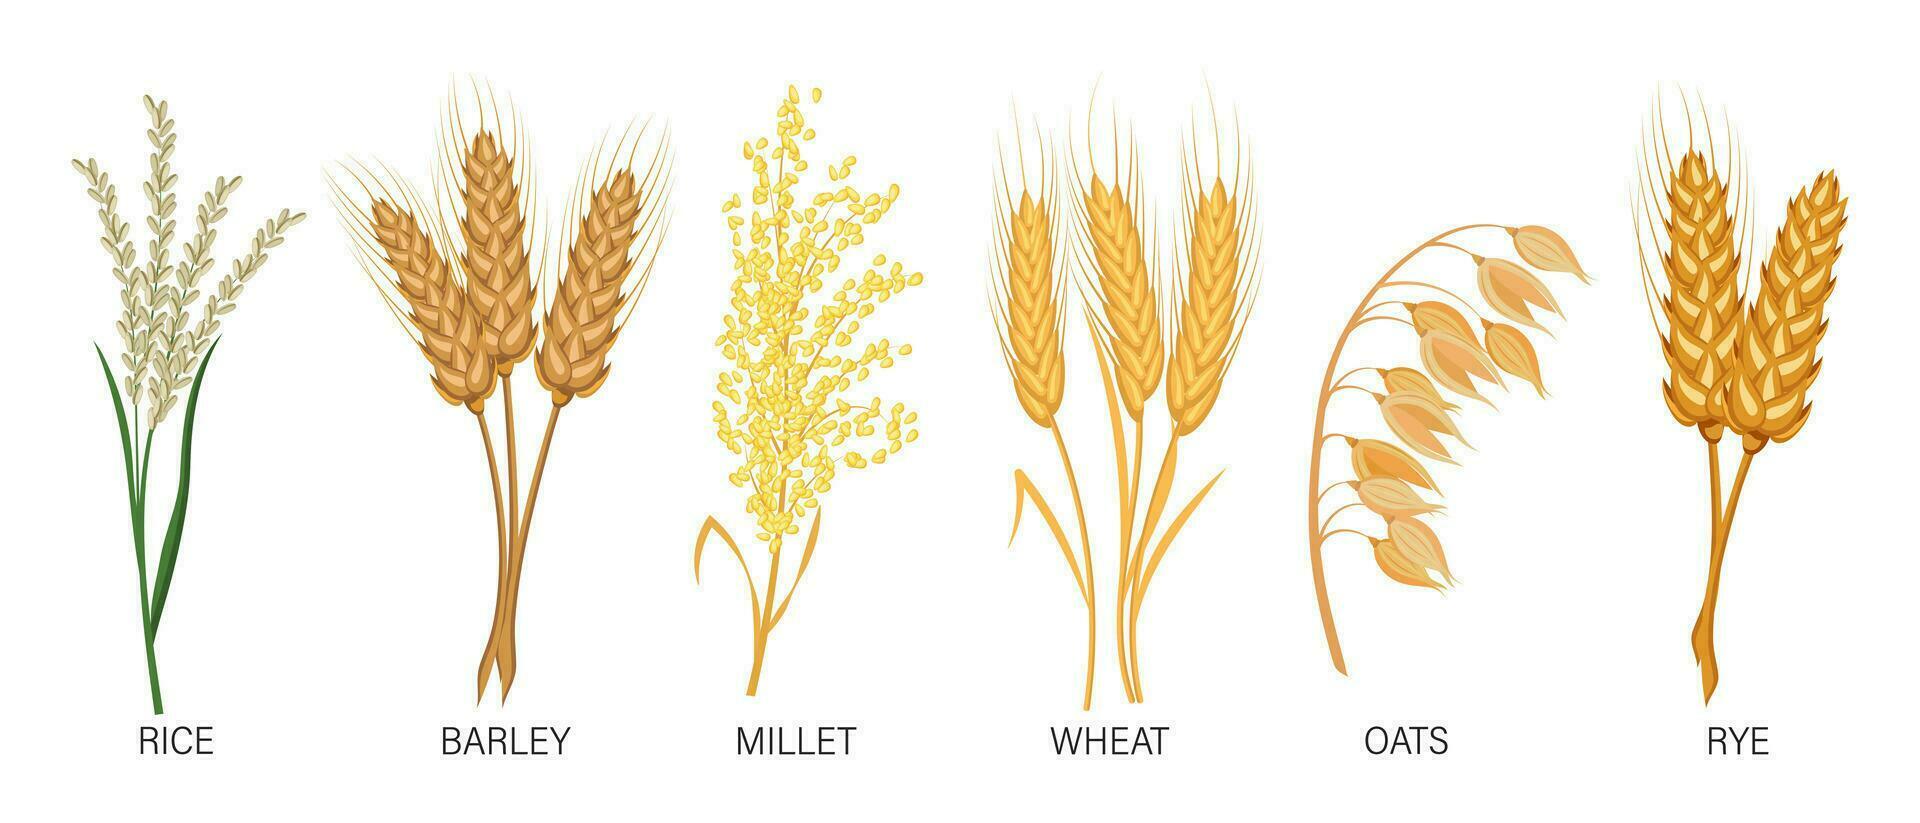 Getreide Satz. Weizen, Roggen, Hafer, Reis, Gerste, Hirse, Ährchen. Ernte, Landwirtschaft. Illustration, Vektor